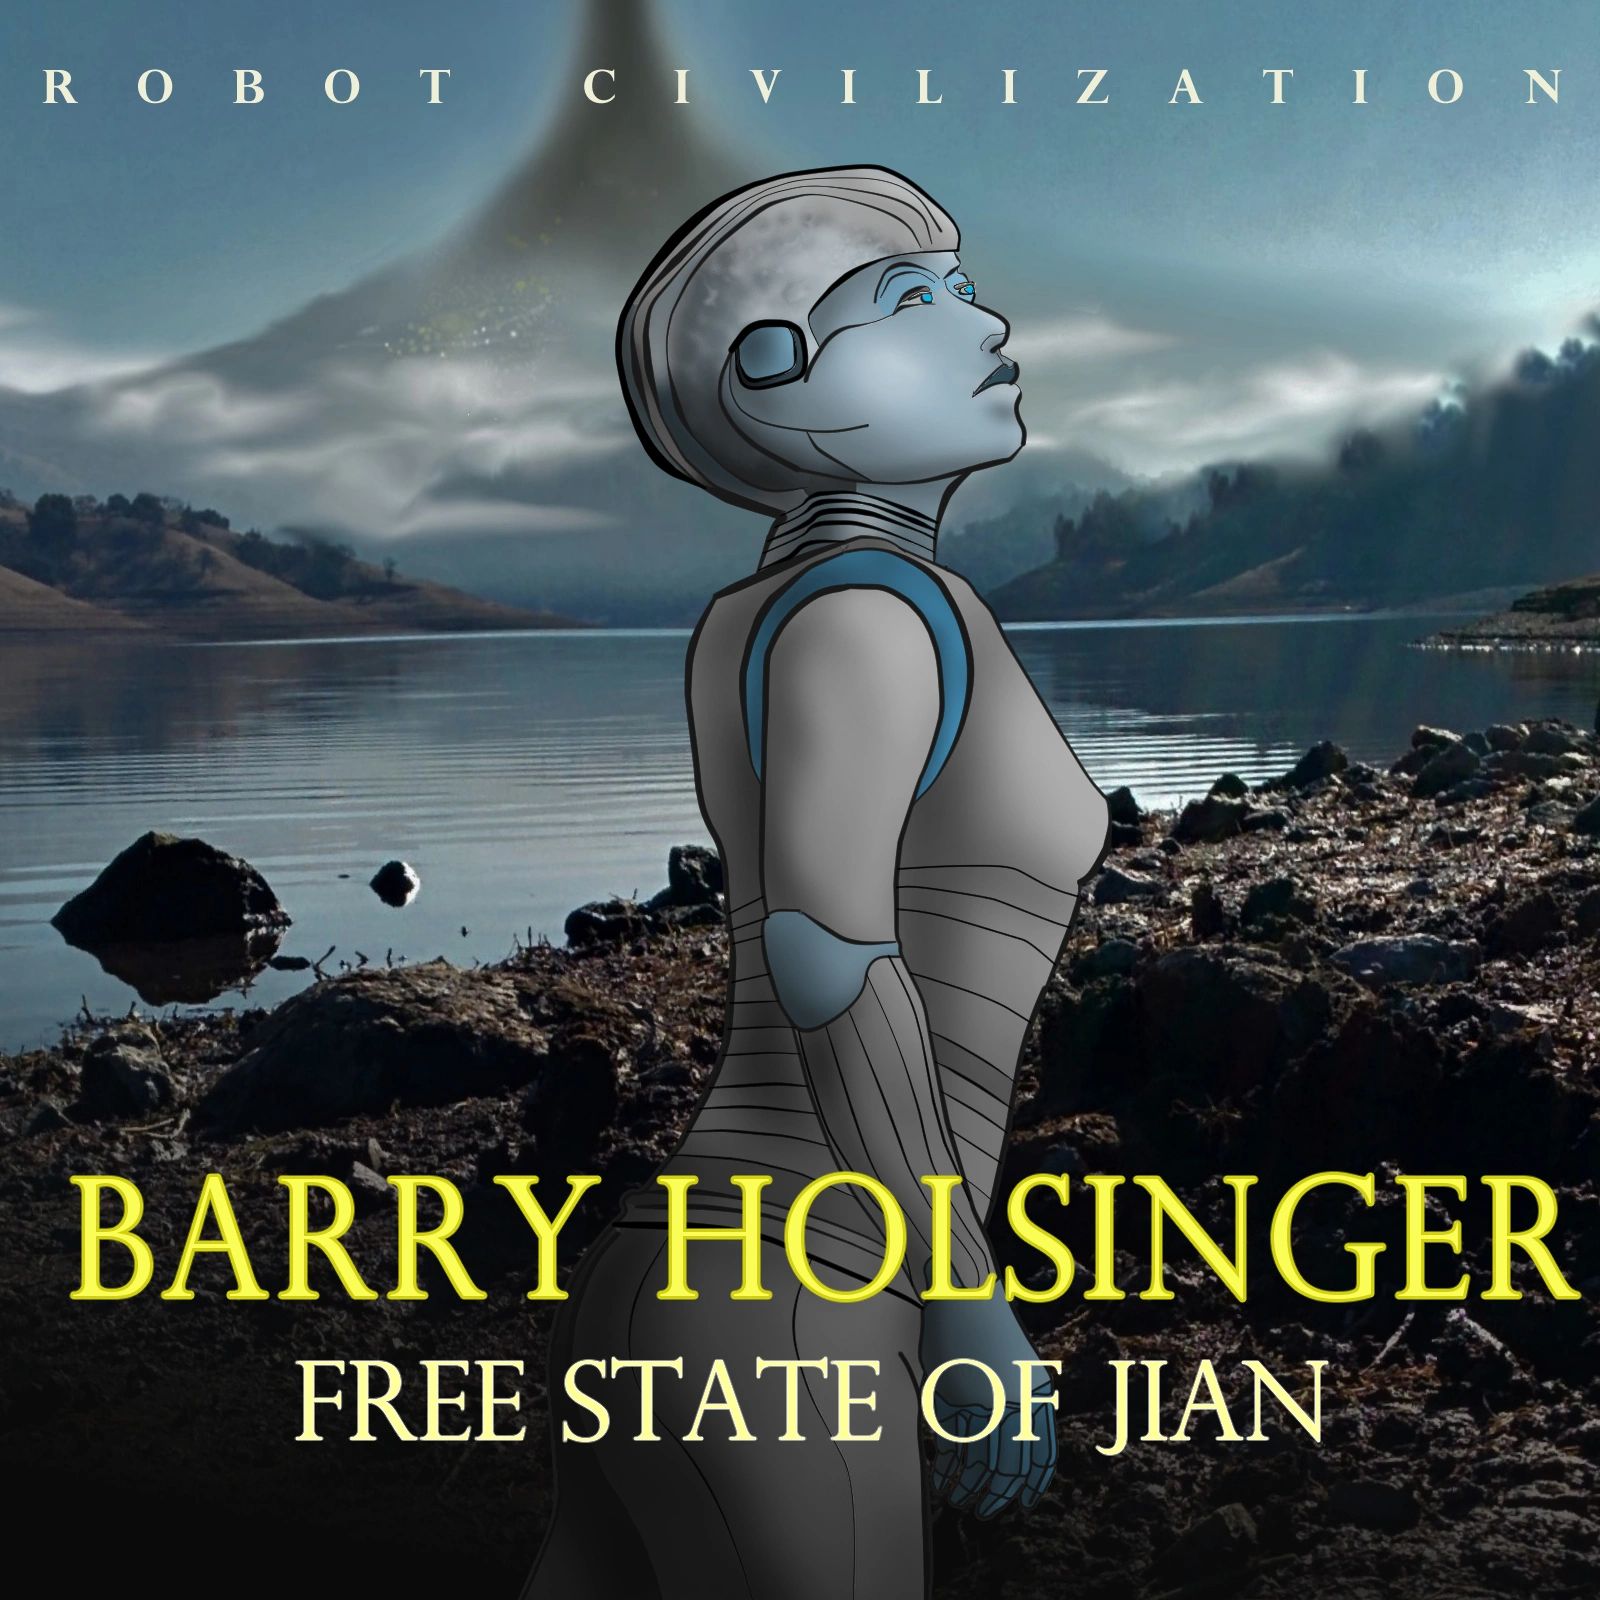 Robot Civilization - Science Fiction, Book, Robot